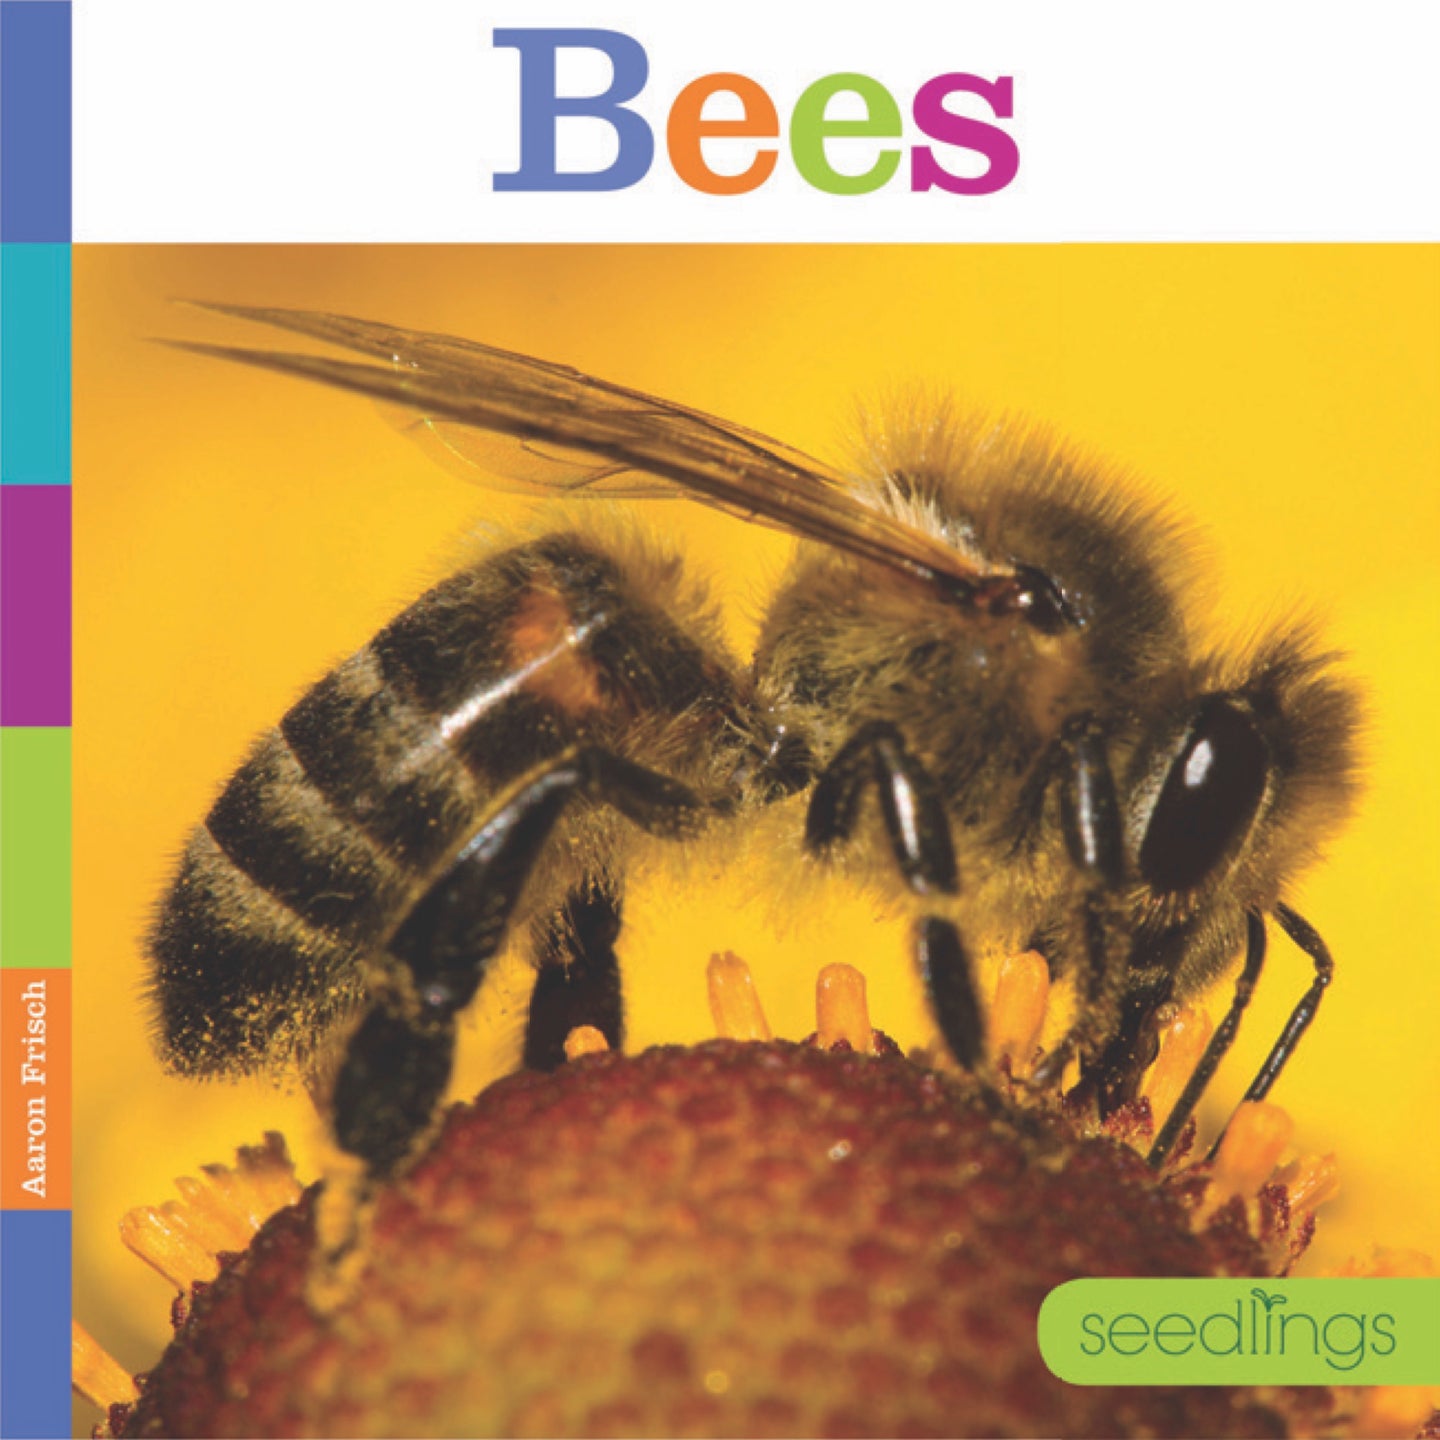 Sämlinge: Bienen